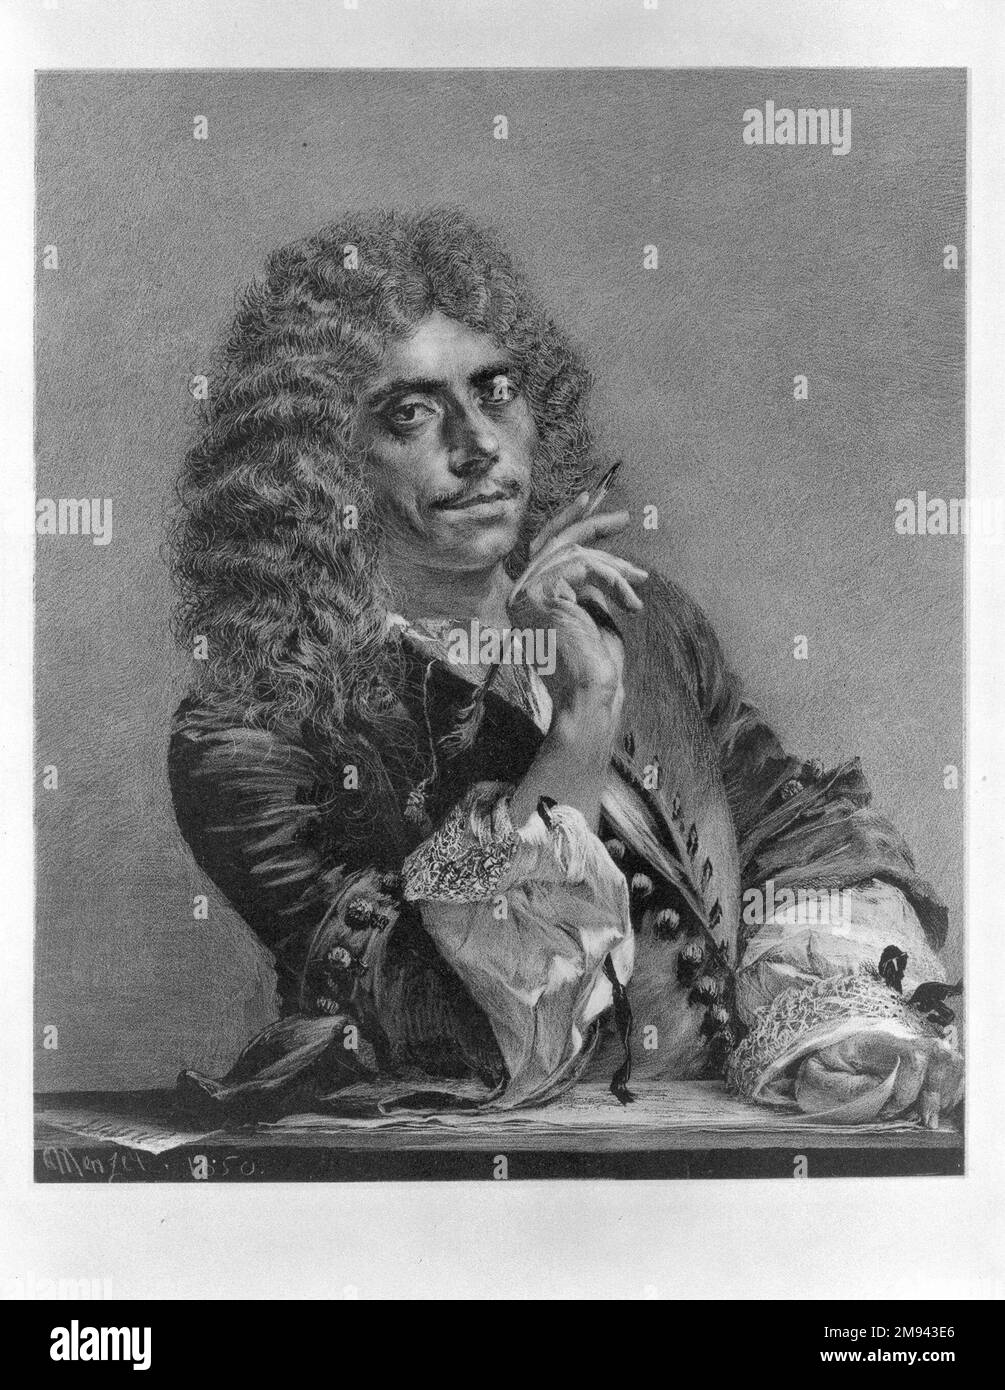 Portrait de Molière Adolf Friedrich Erdmann von Menzel (allemand, 1815-1905). Portrait de Molière, 1850. Gravure en masse douce sur papier de Chine, 8 1/4 x 7 po. (21 x 17,8 cm). Art européen 1850 Banque D'Images